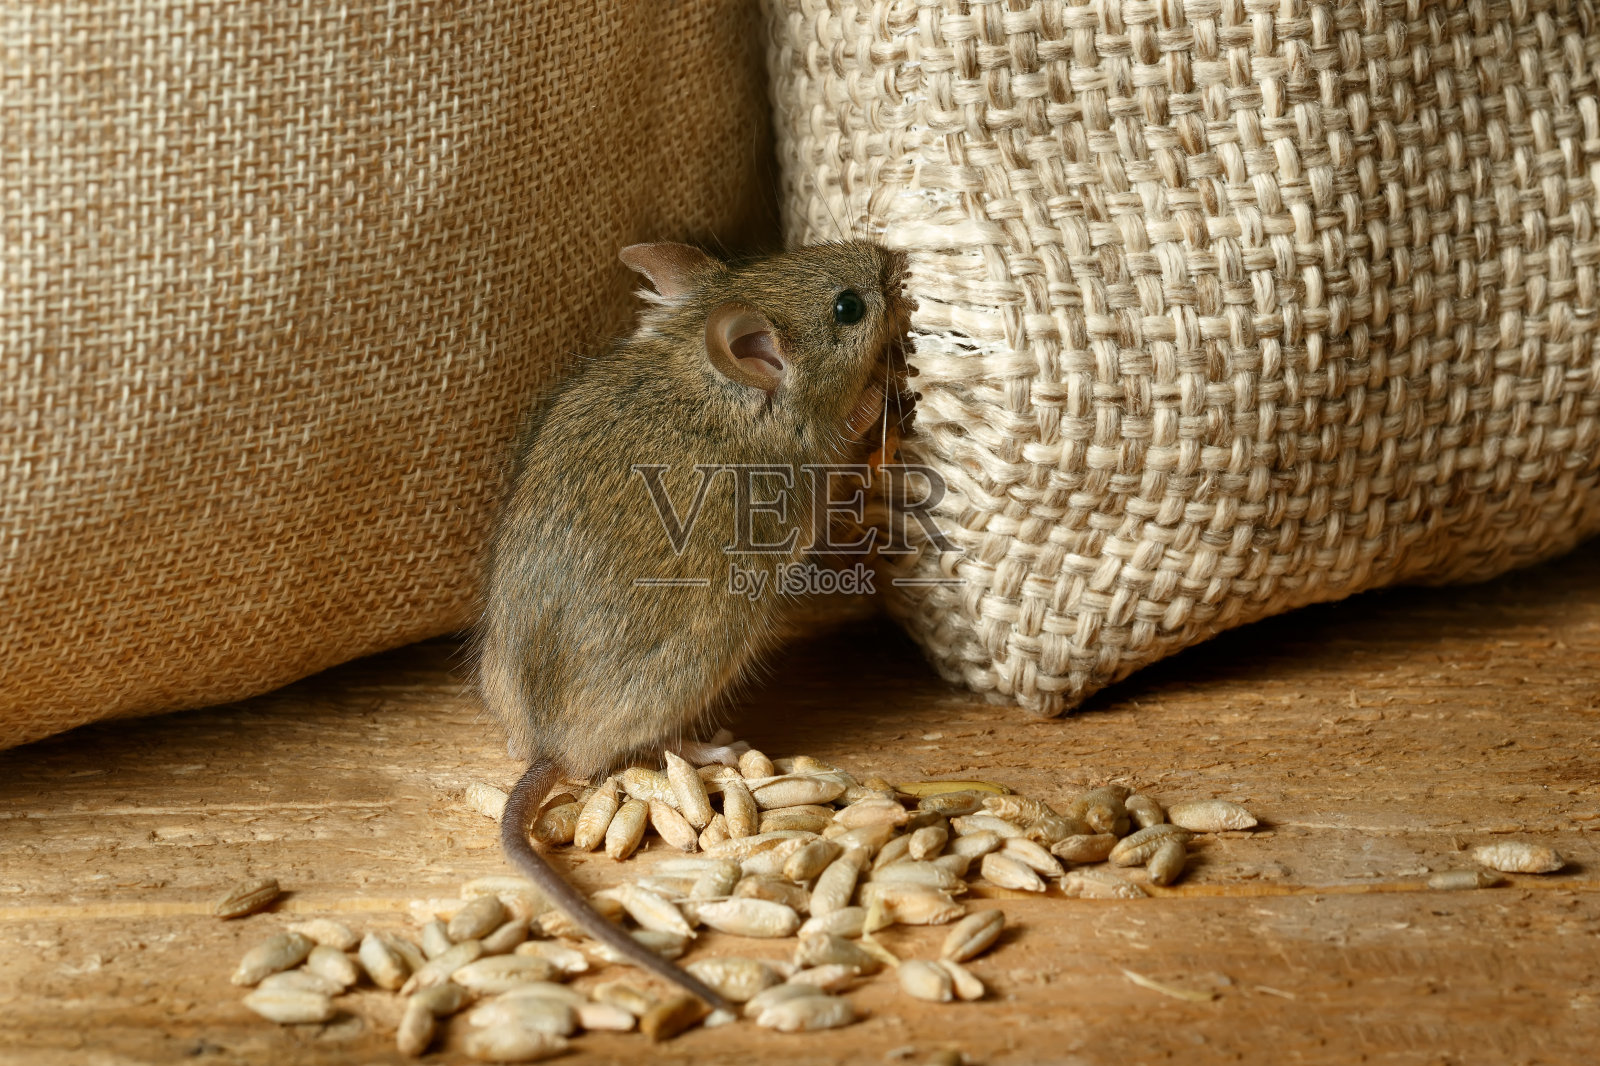 镜头近了，田鼠正在啃着仓库里的一袋粮食照片摄影图片